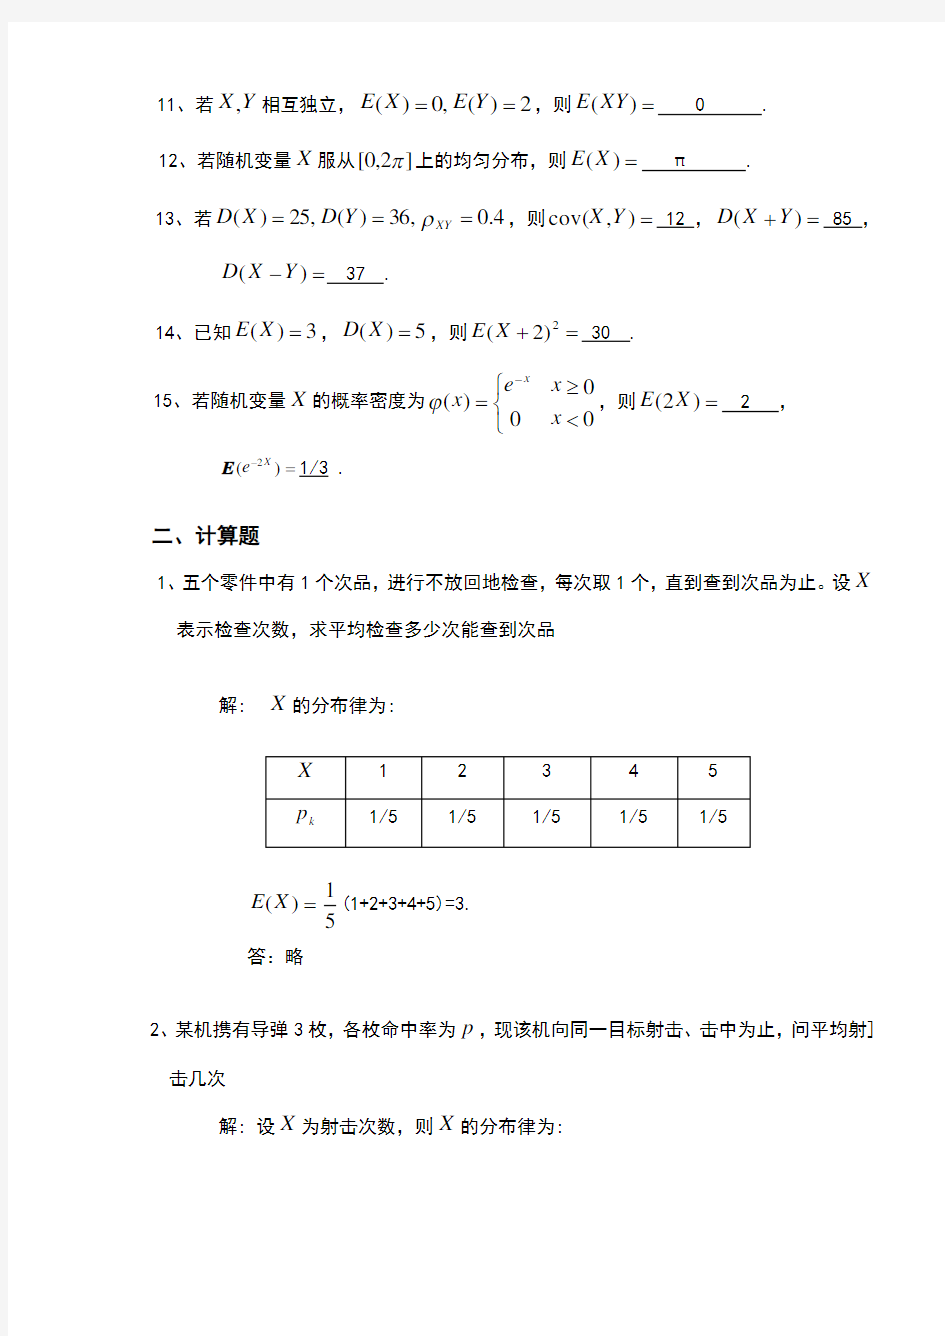 天津理工大学概率论与数理统计第四章习题答案详解